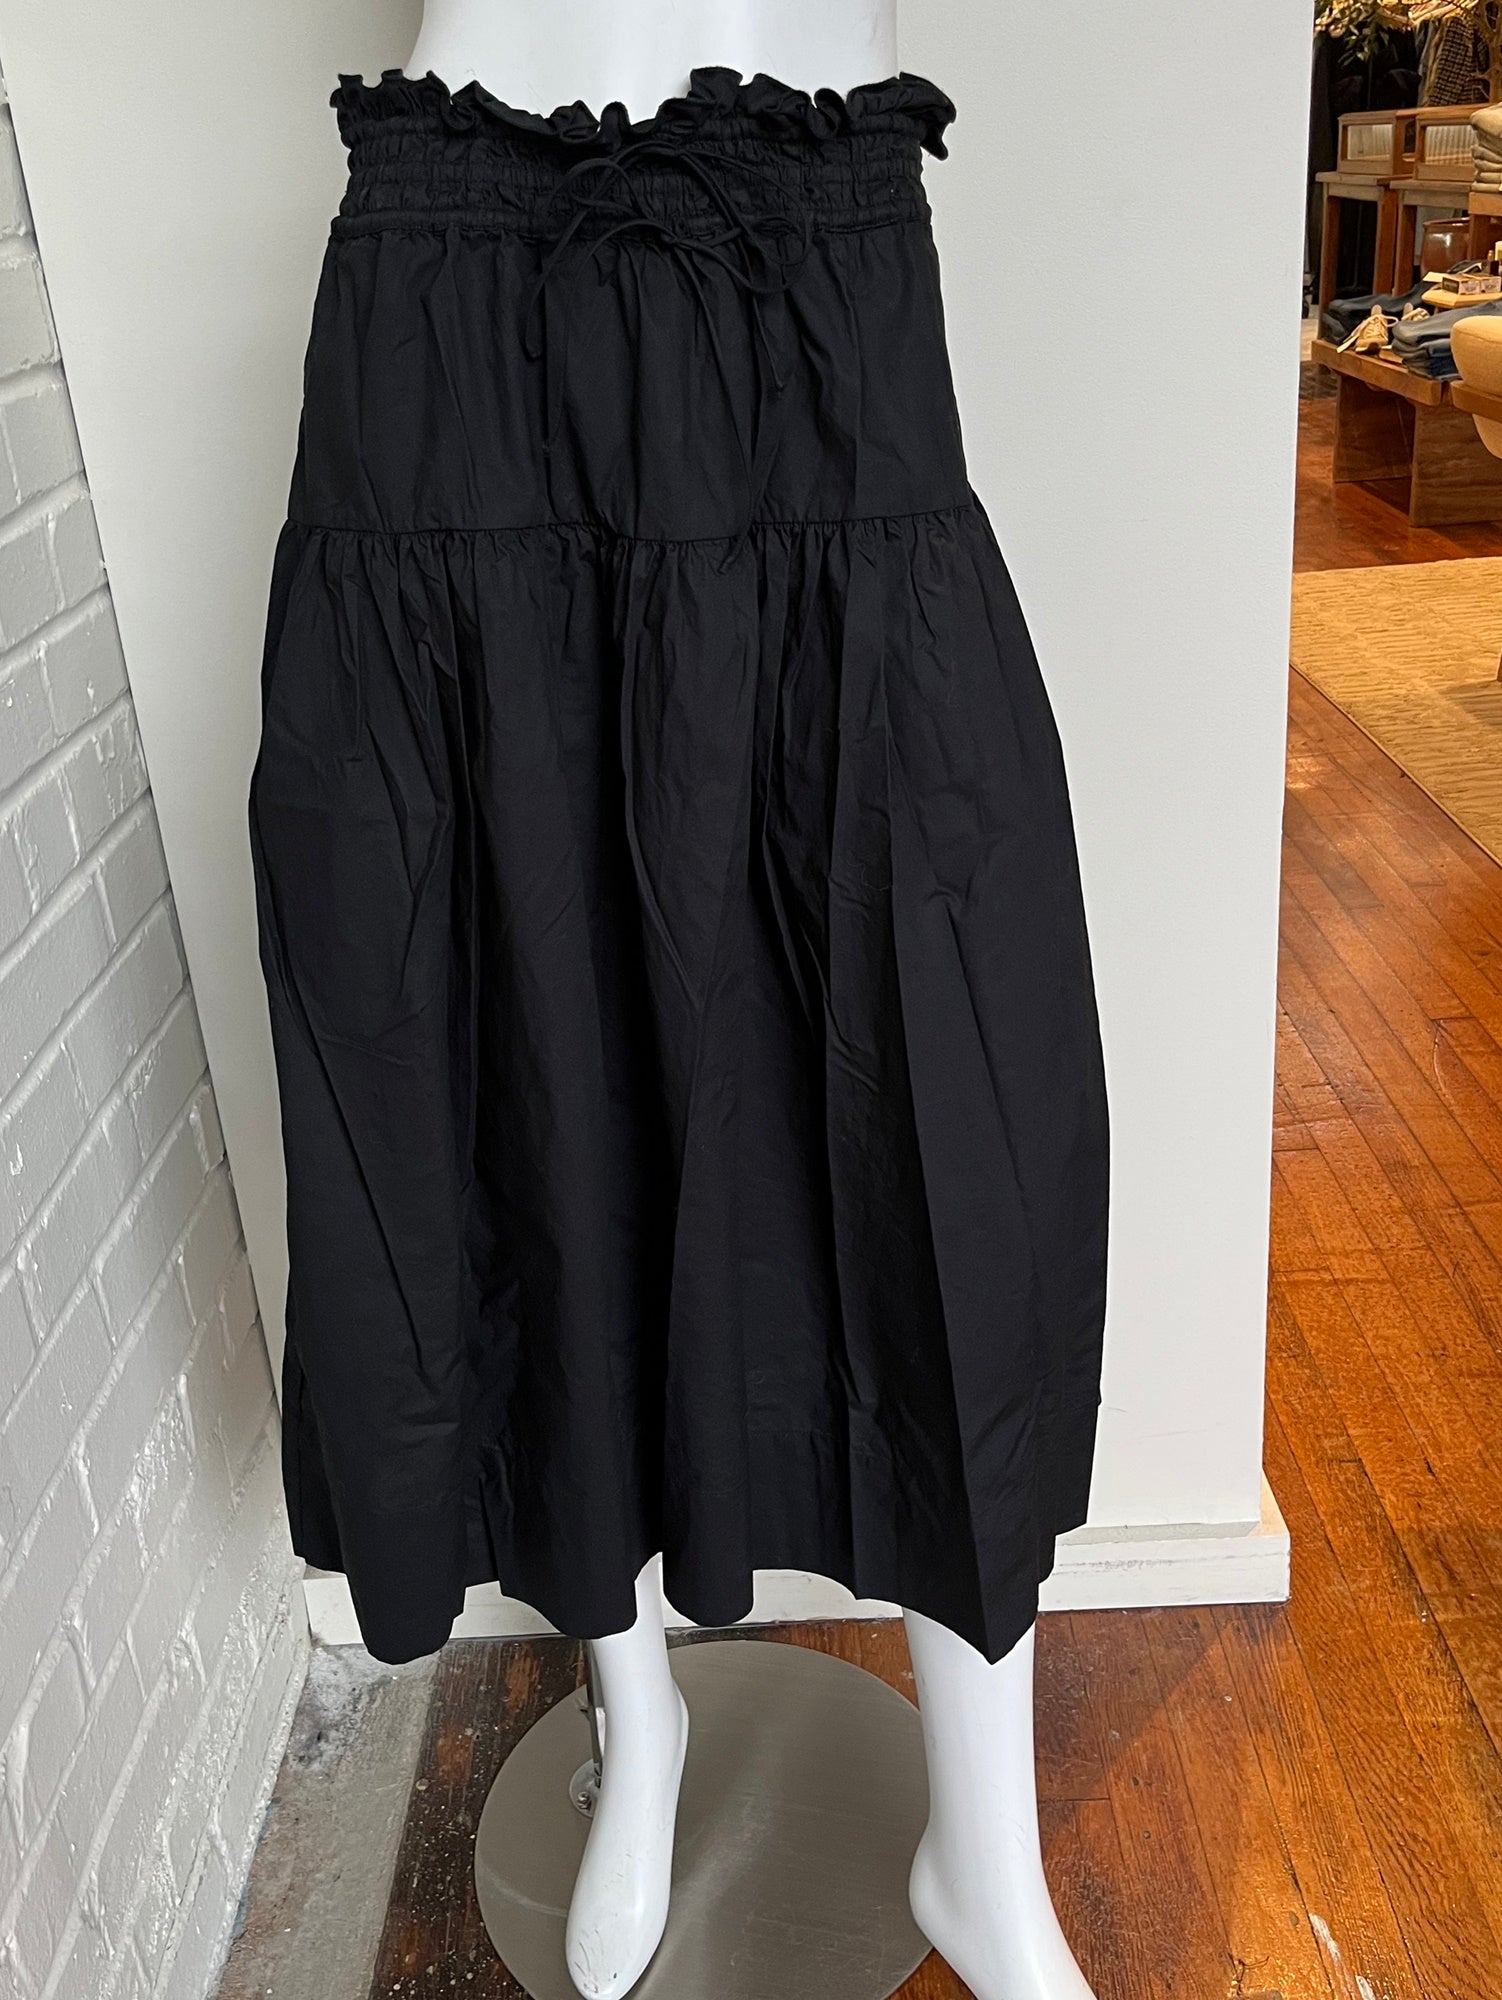 Kyra Skirt Size 8